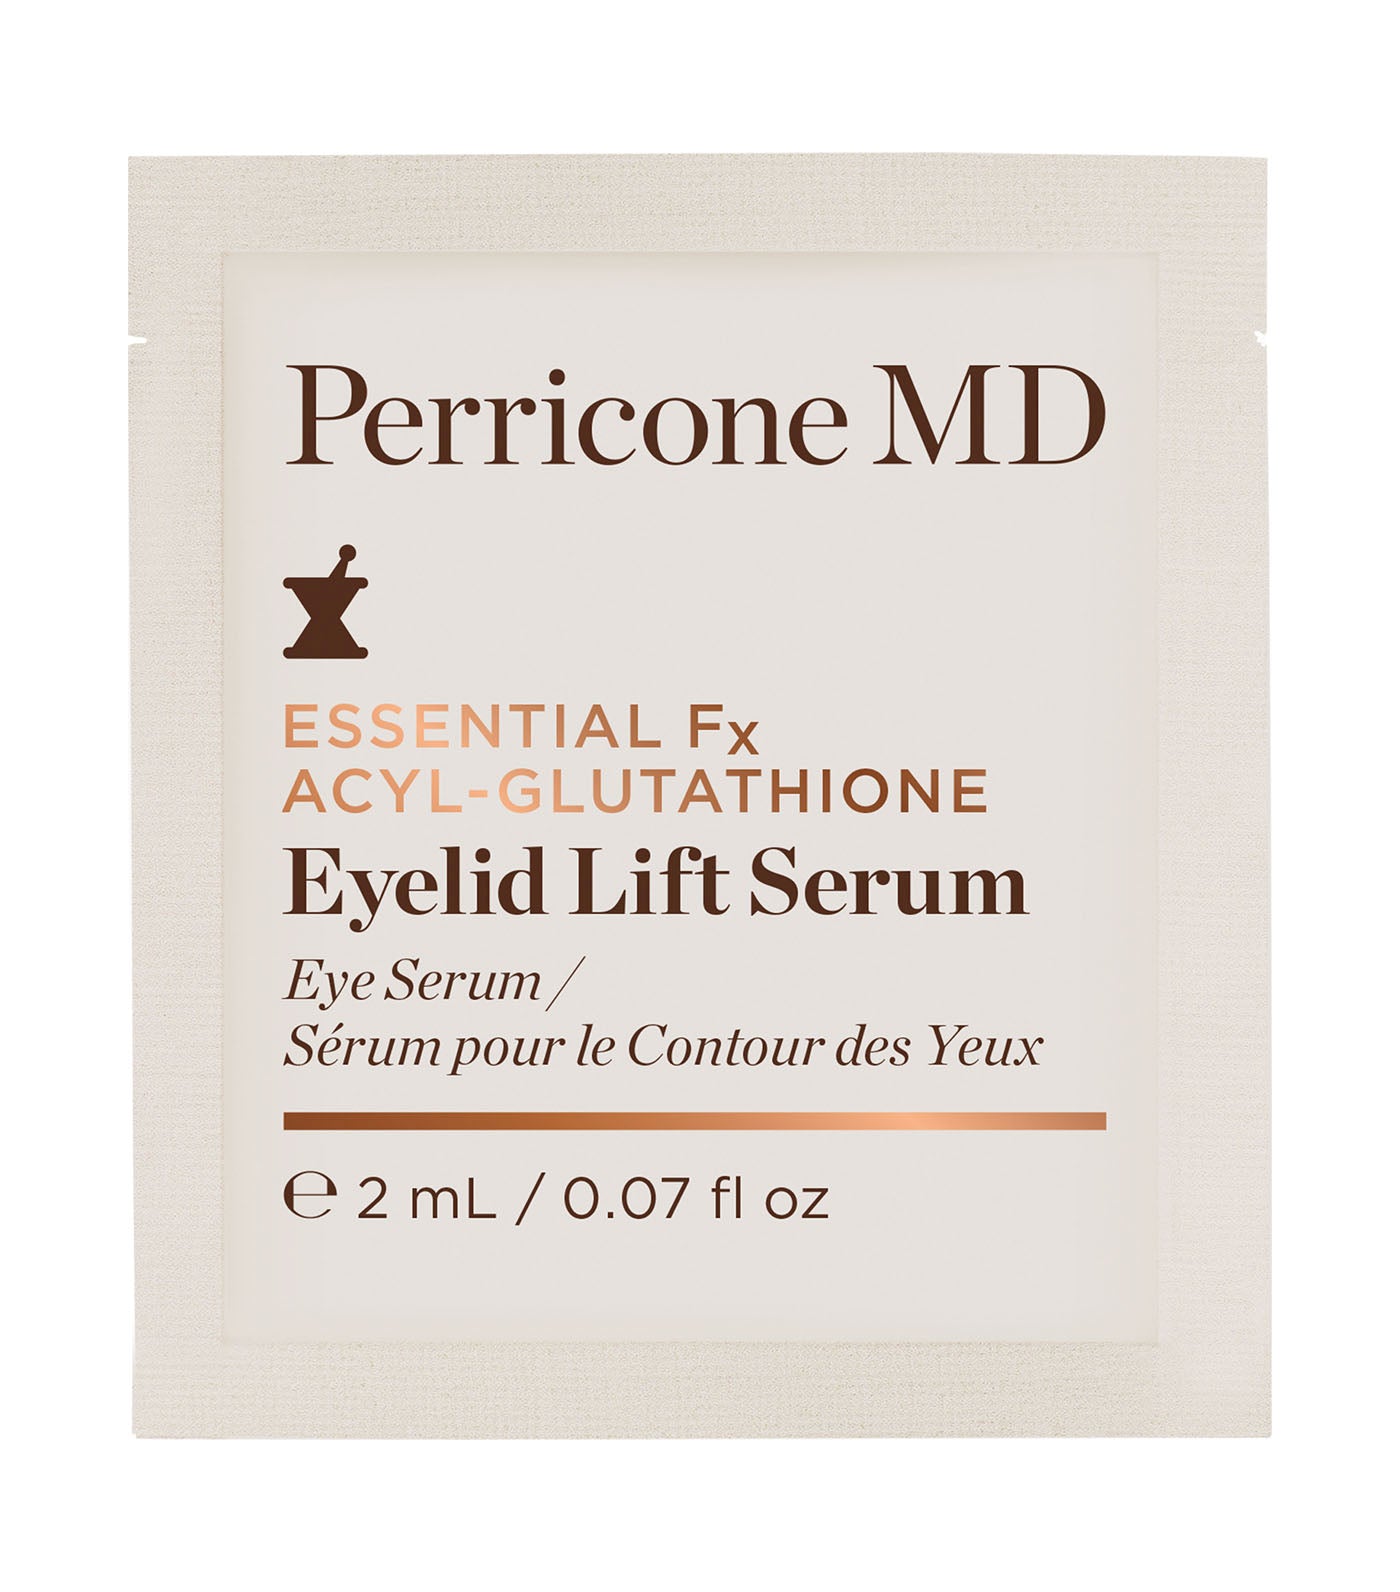 Free Essential Fx Acyl-glutathione Eyelid Lift Serum Packette